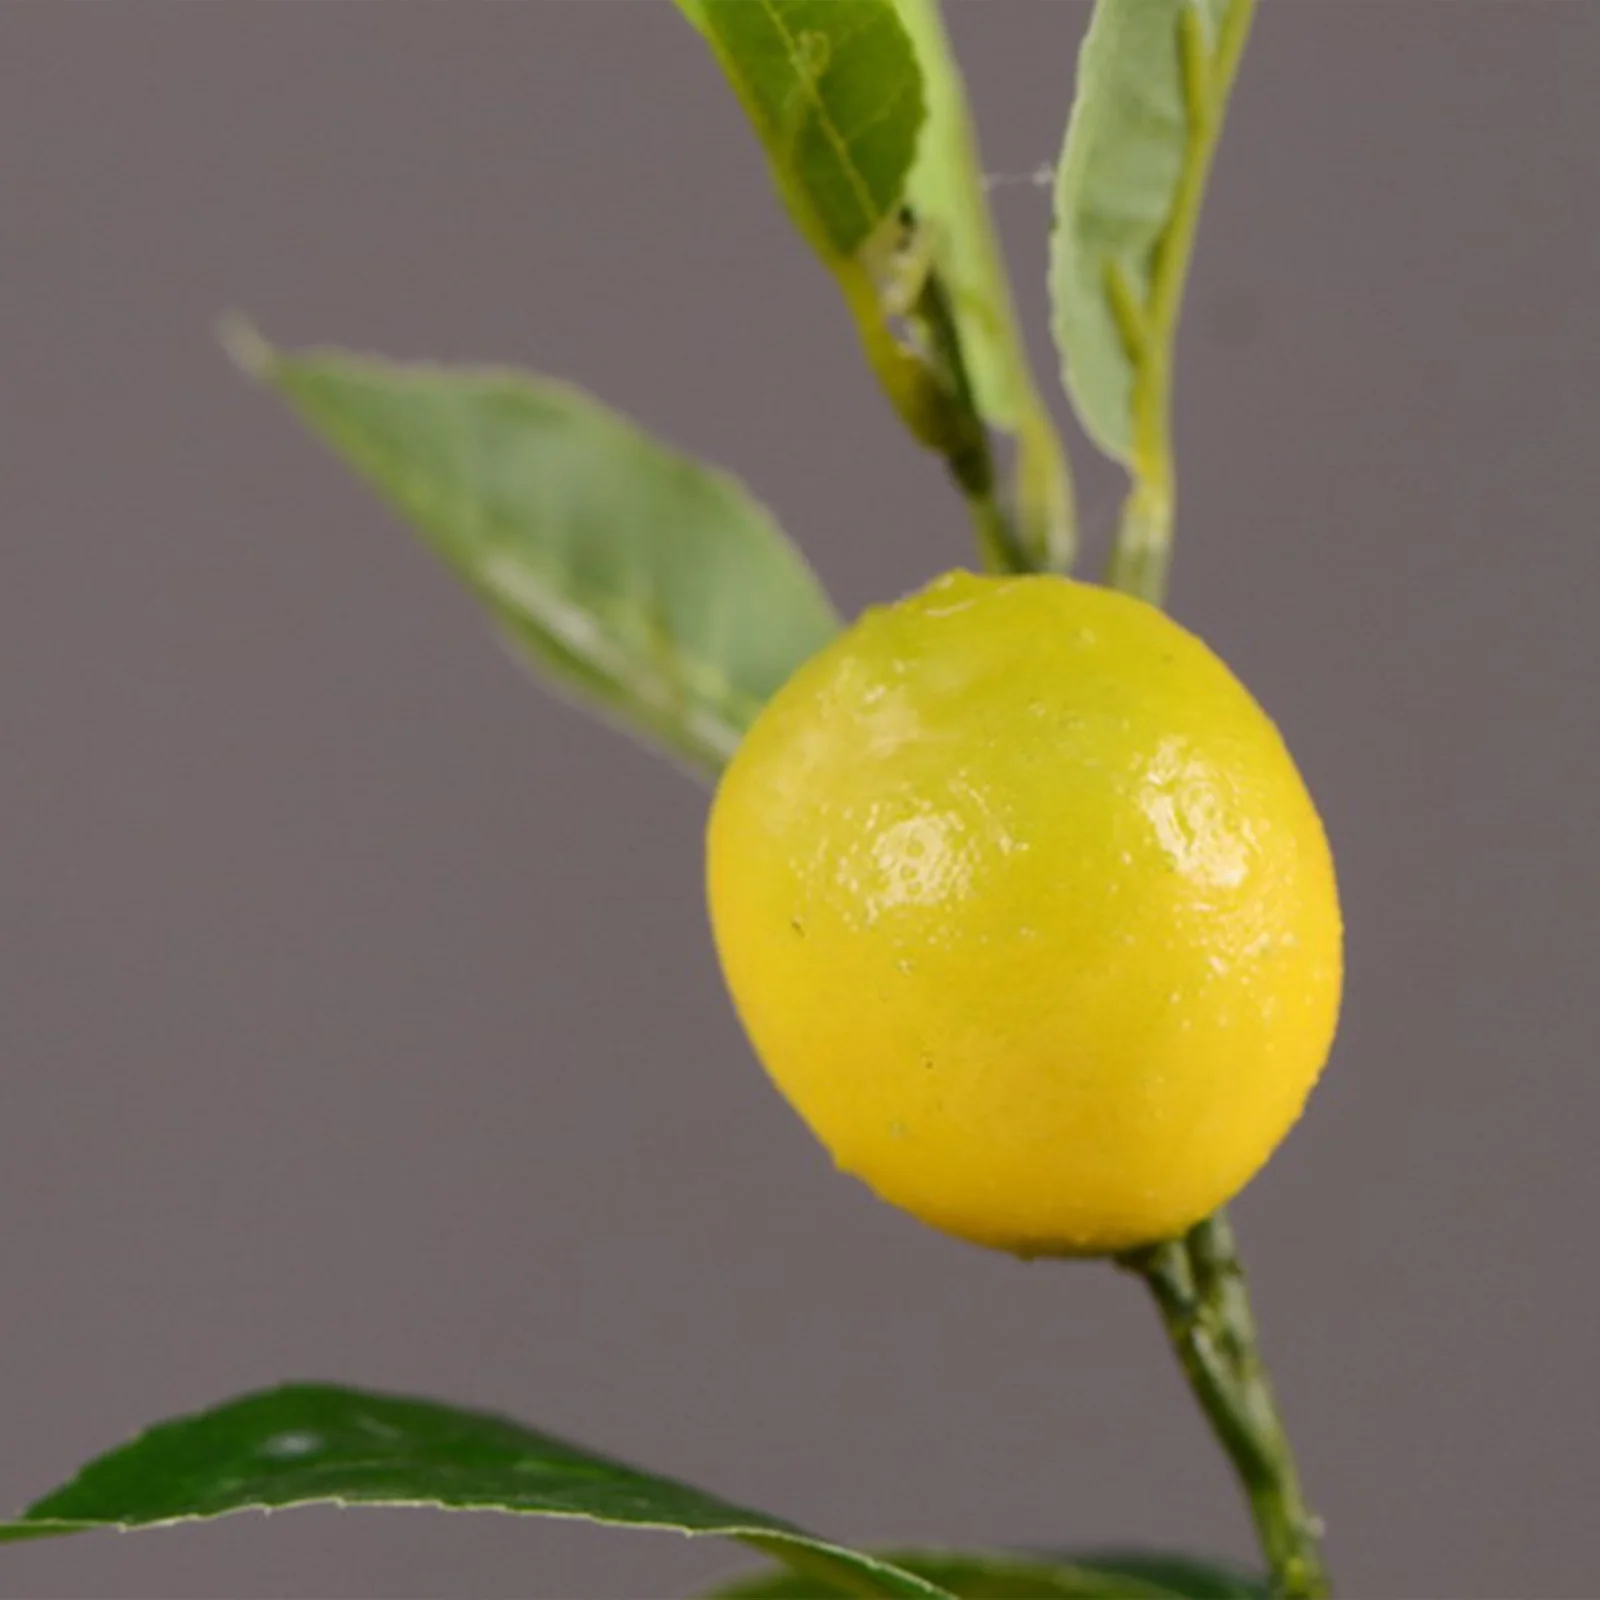 Искусственная имитация лимона, черенки растений, декор для дома 91 см / 35,8 дюйма, сделай сам, желтый + зеленый Качественный поролоновый материал, искусственные цветы